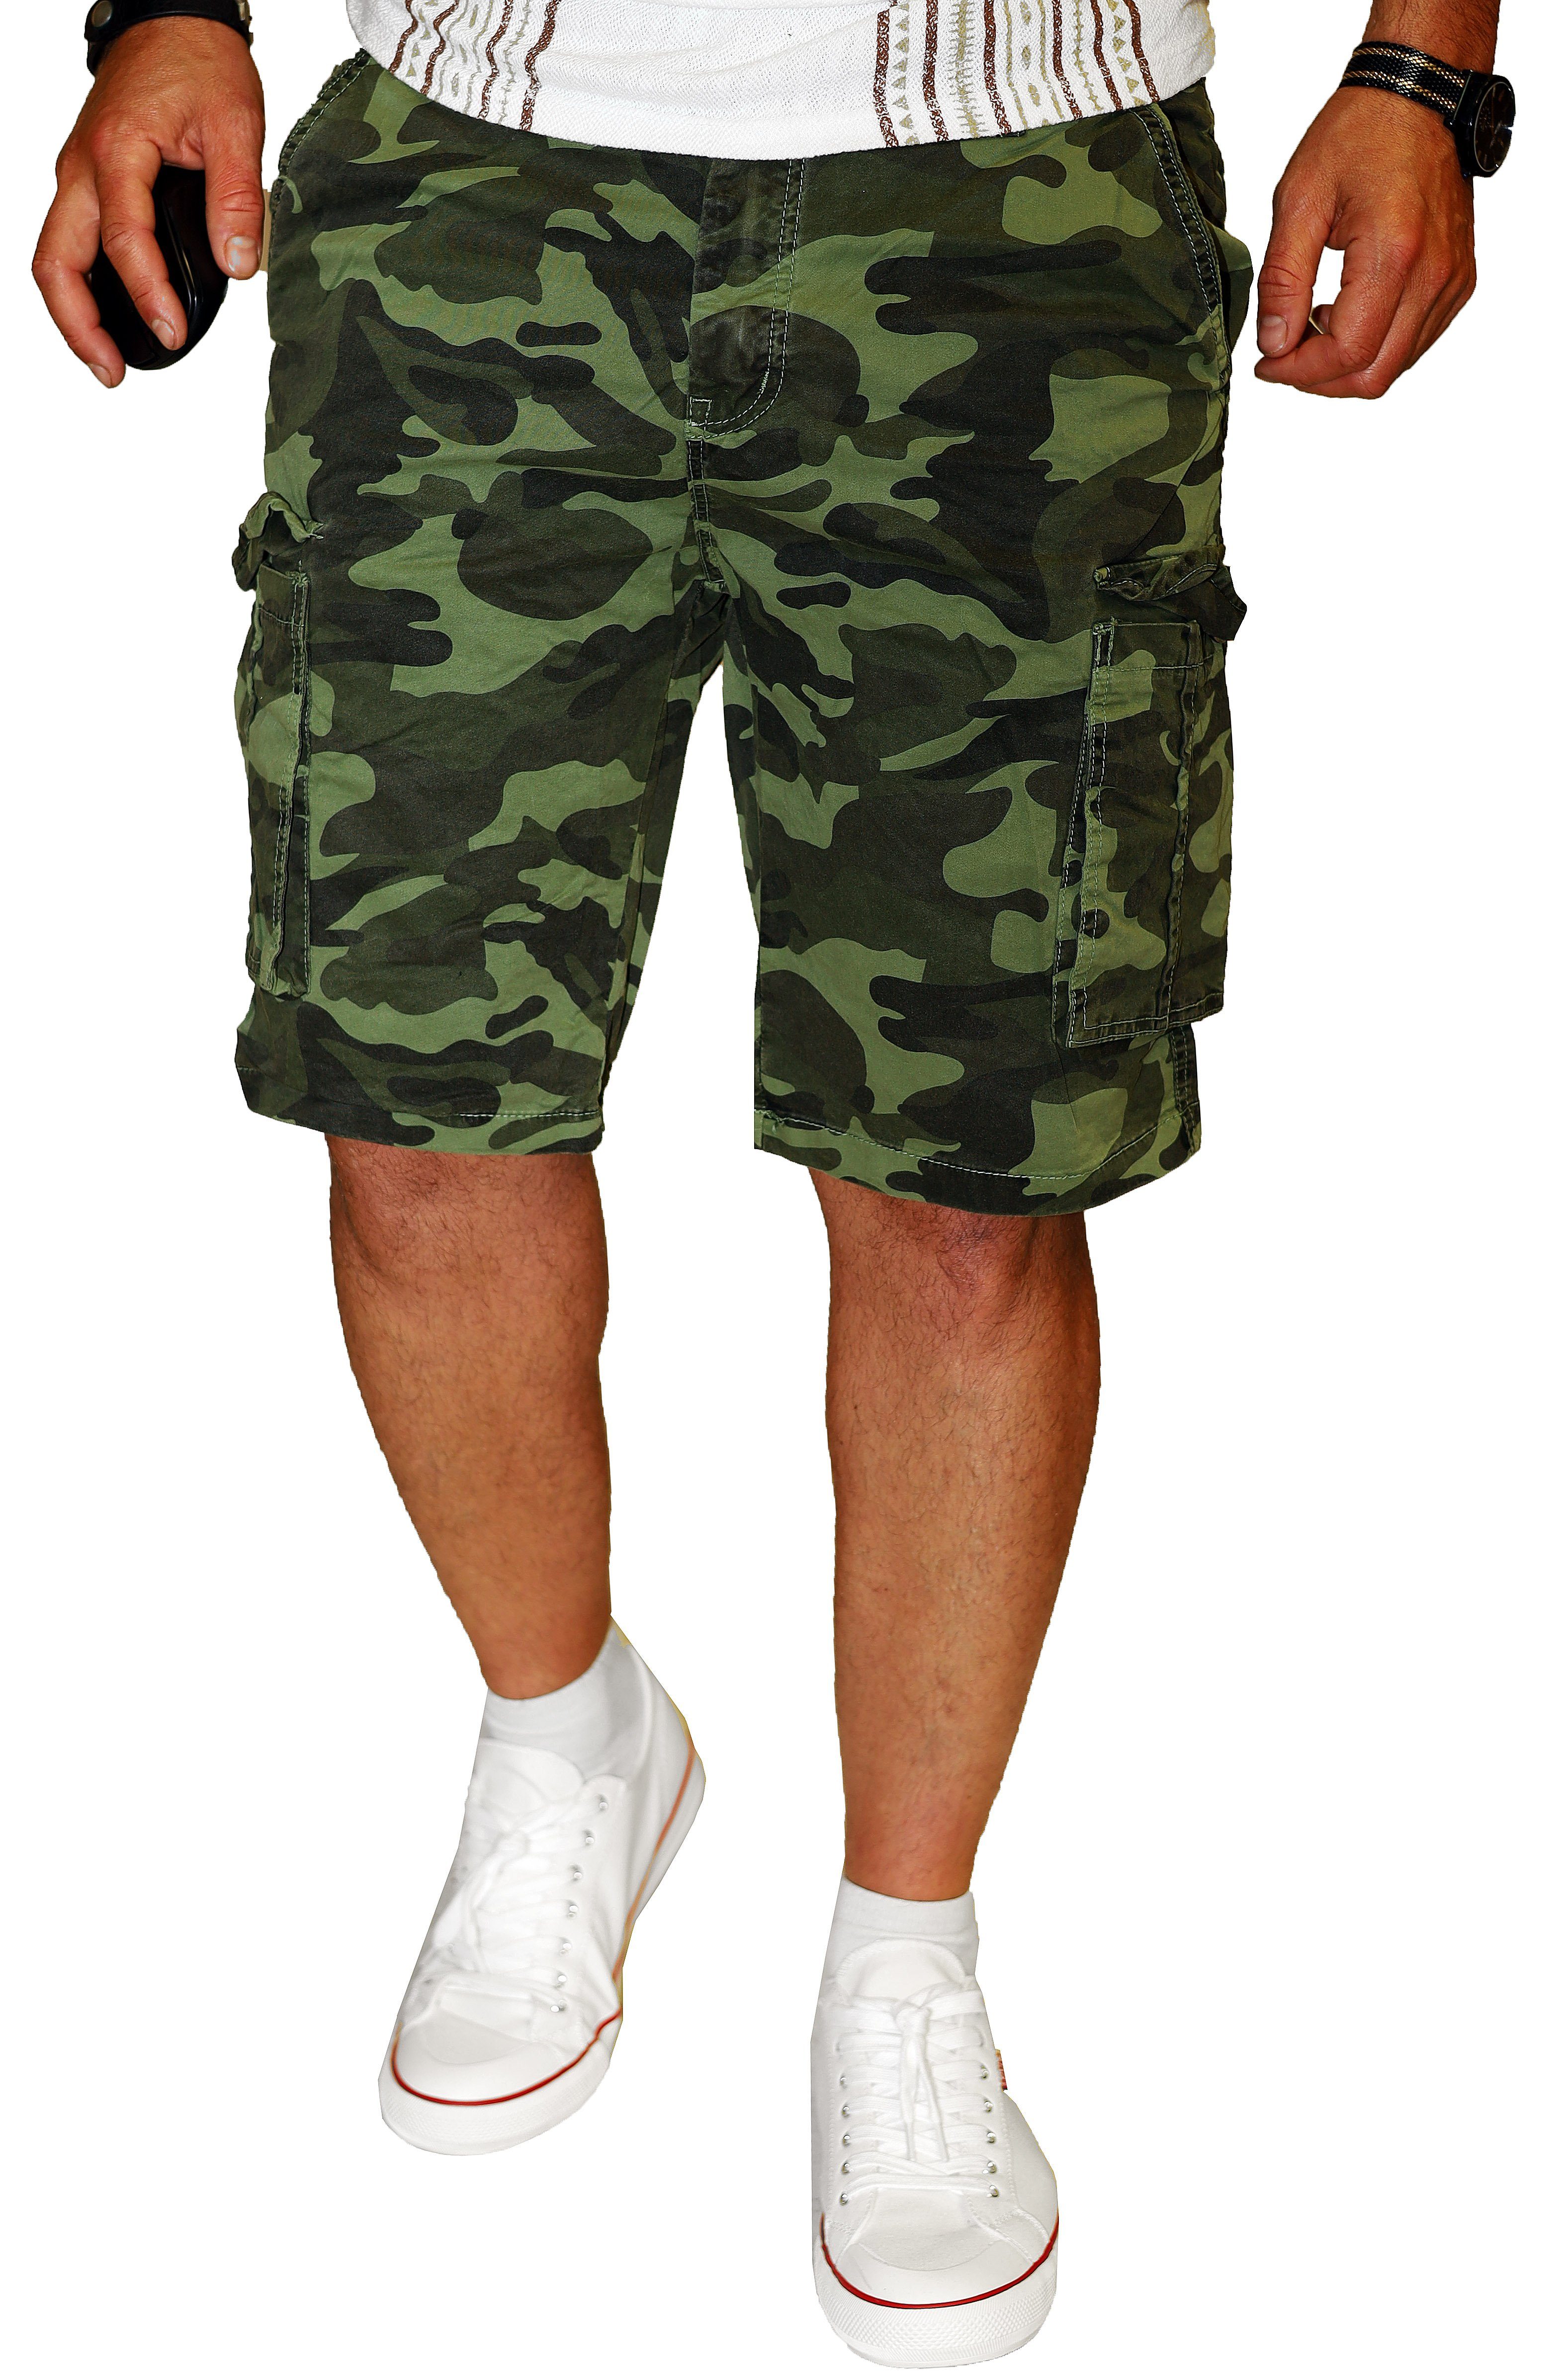 RMK Cargoshorts Herren Short Camouflage Bermuda kurze Hose Army Tarn Set in Tarnfarben, aus 100% Baumwolle